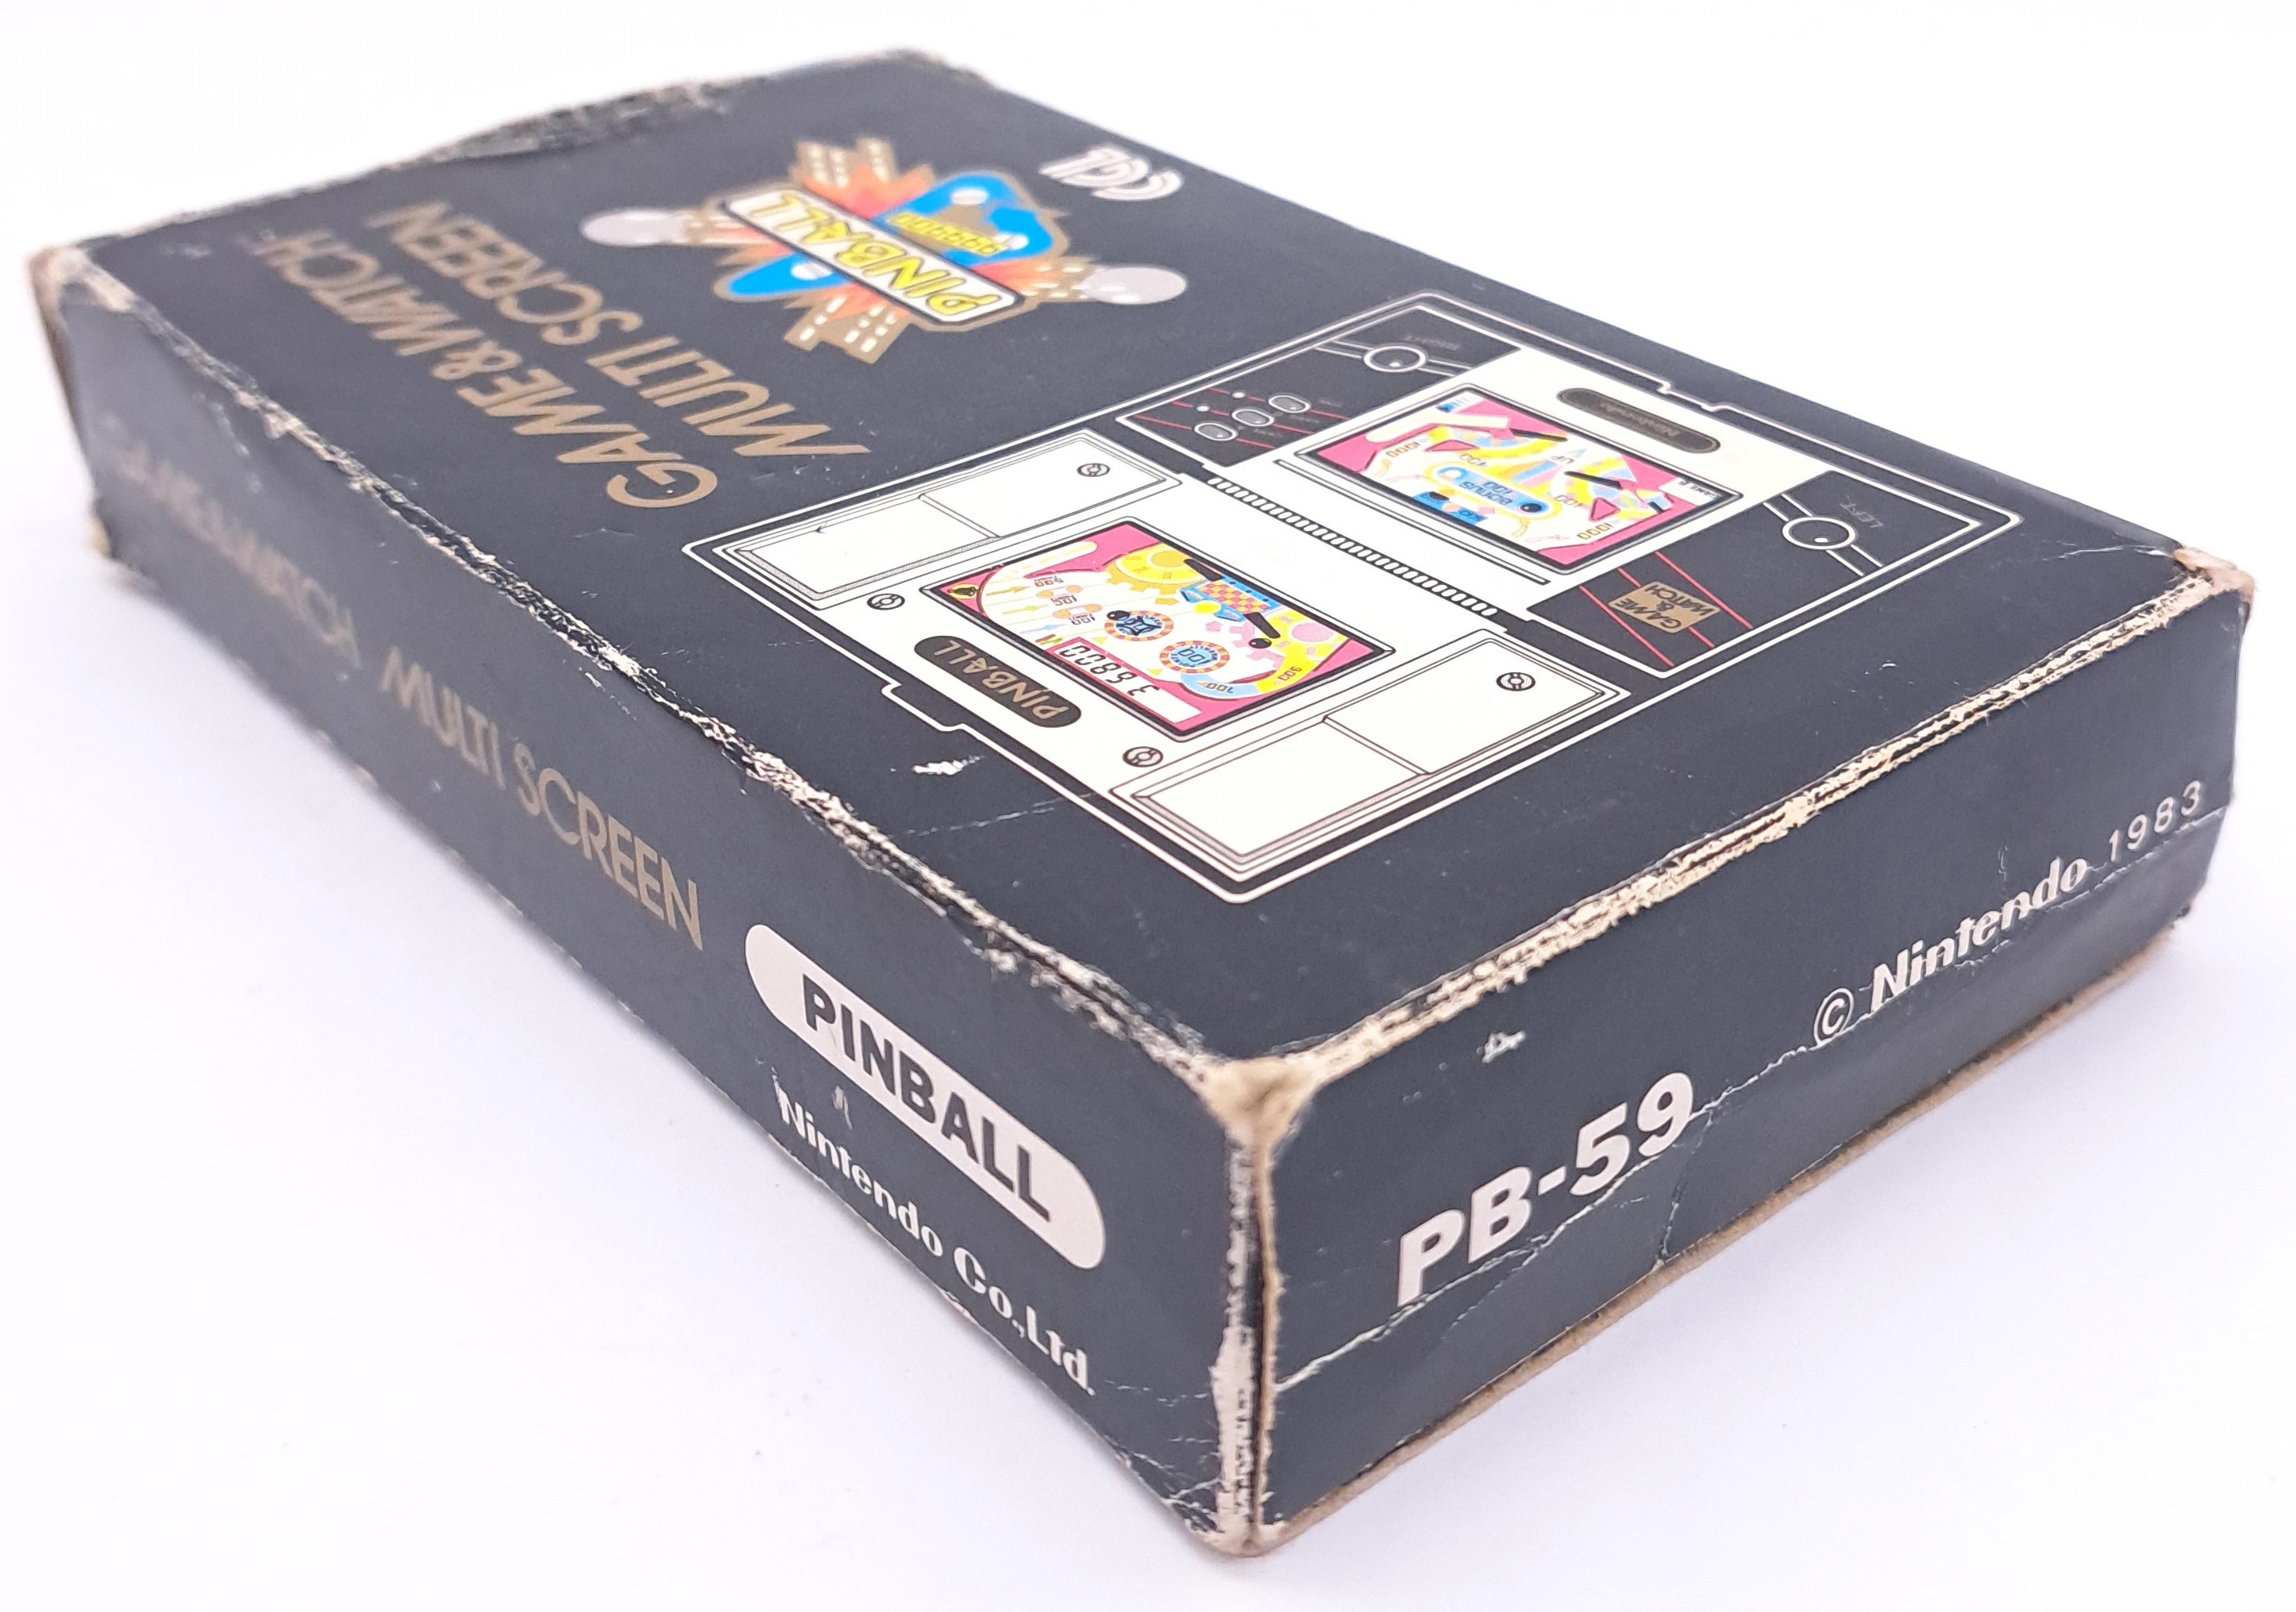 Vintage/Retro Gaming. Nintendo Game & Watch, boxed PB-59 “Pinball” - Image 12 of 12